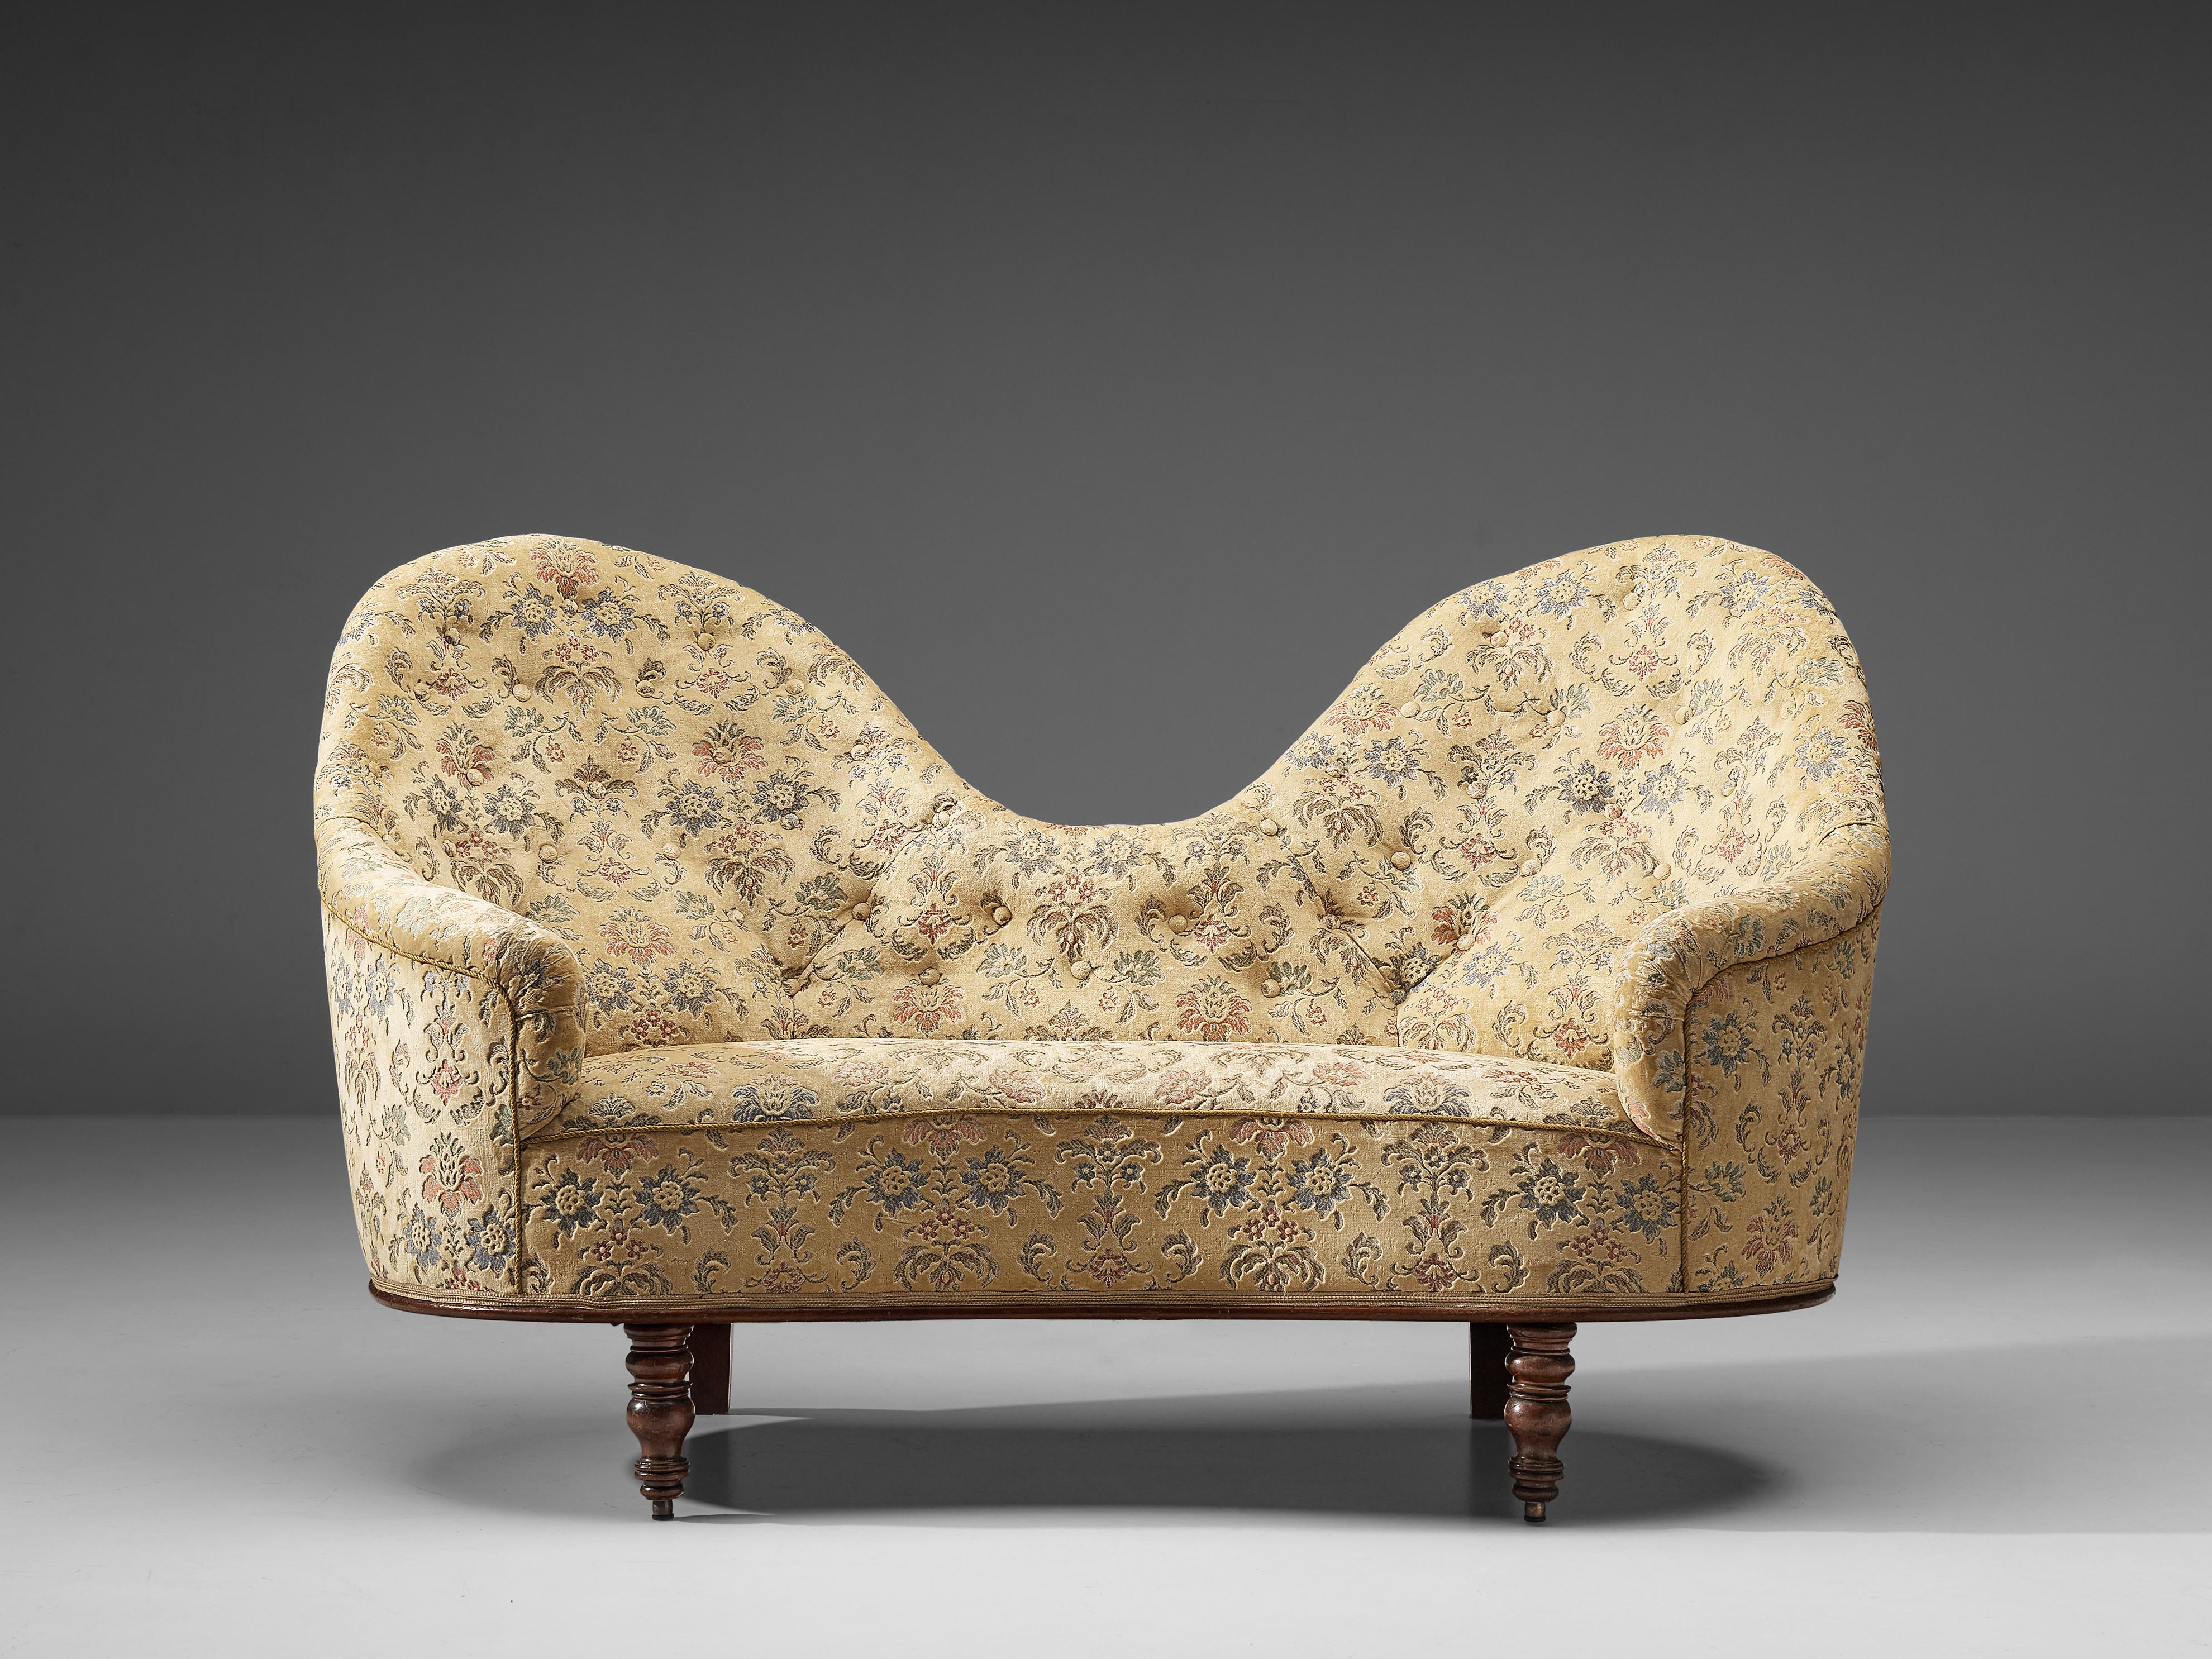 Art Deco Sofa, Holz, Stoff, Frankreich, 1940er Jahre

Dieses bezaubernde Zweisitzer-Sofa hat einen zarten, cremefarbenen Bezug, der mit einem illustrativen Muster aus Fauna und Flora verziert ist und klassisch mit sanften Farben genäht wurde. Das